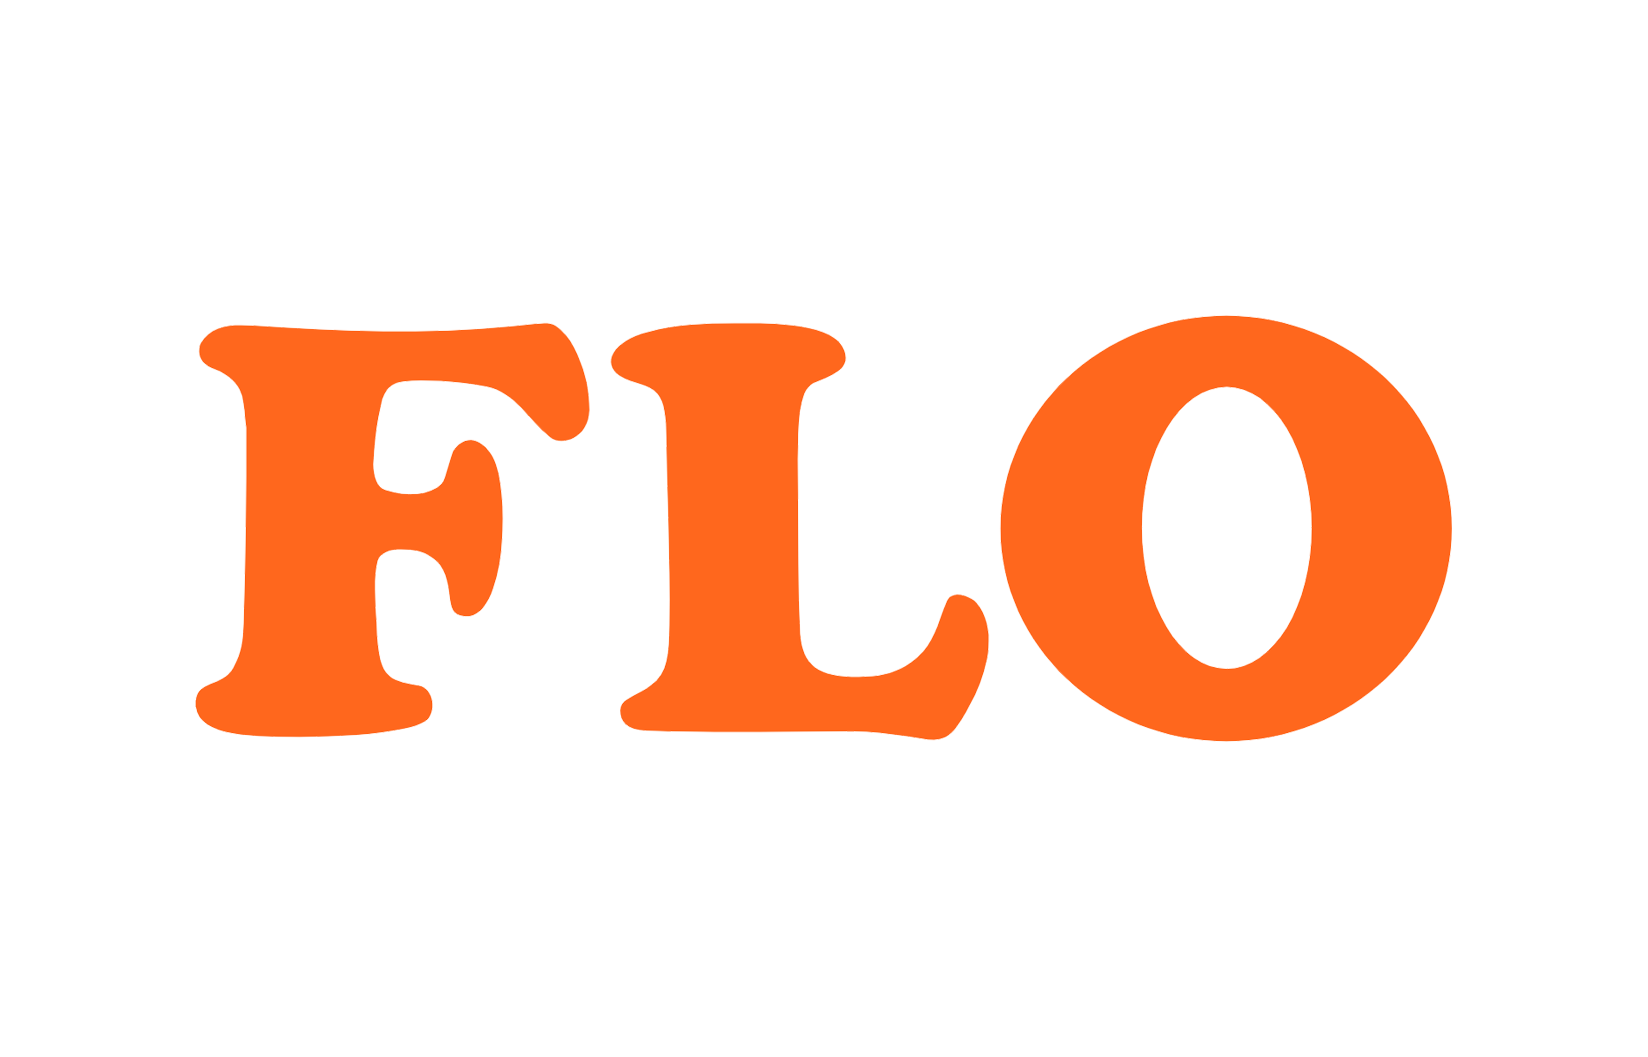 FLO